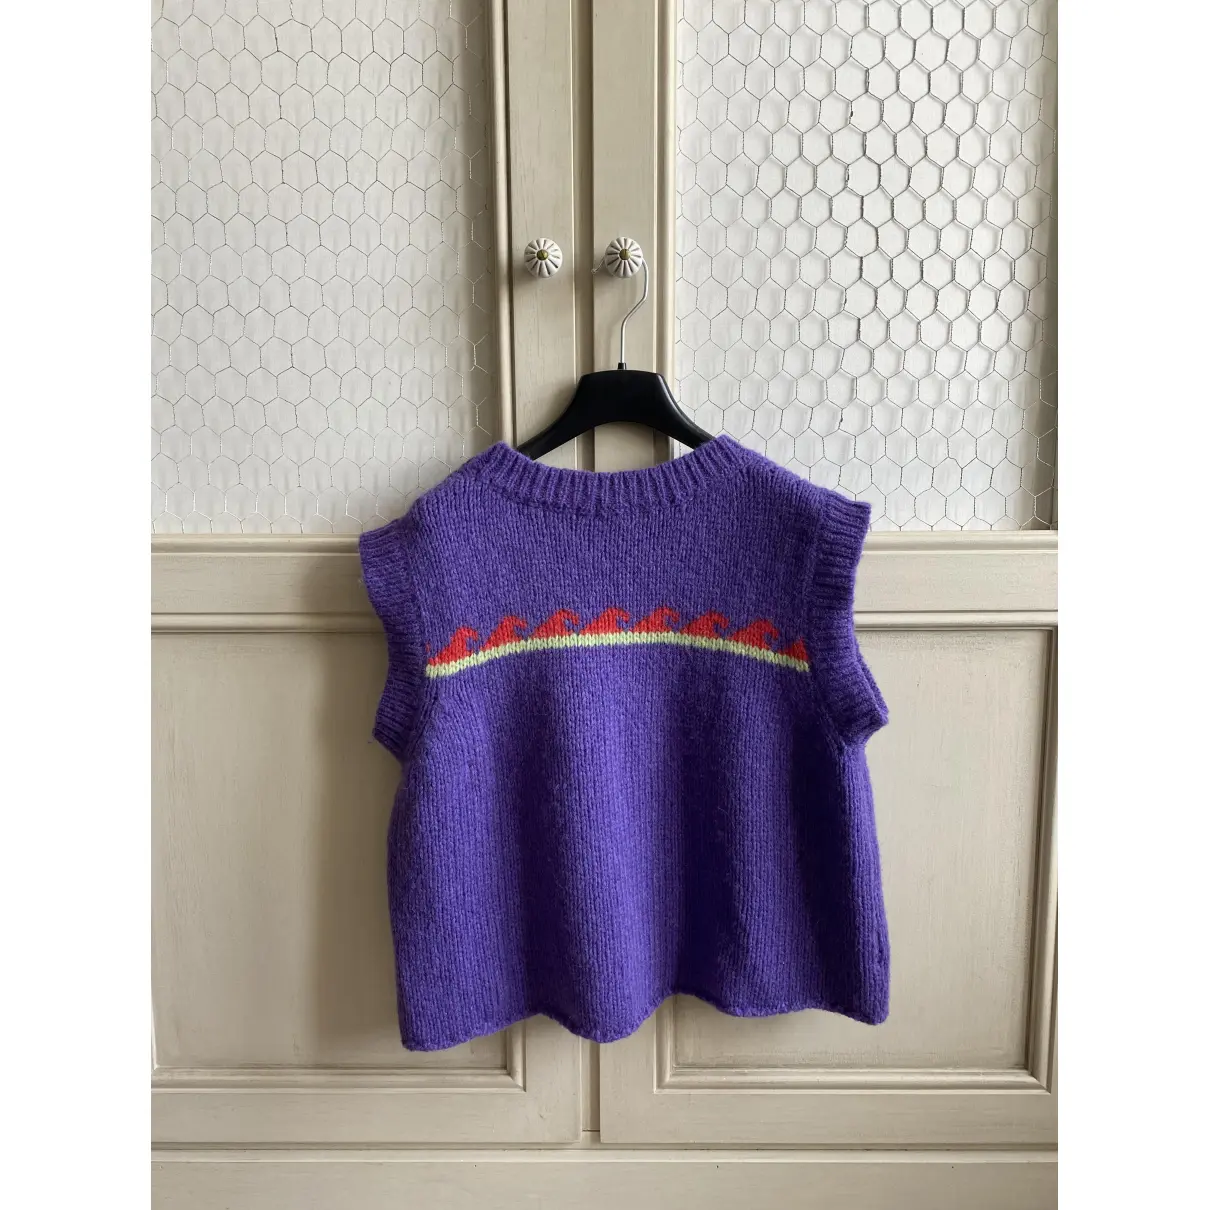 Buy Gimaguas Wool jumper online